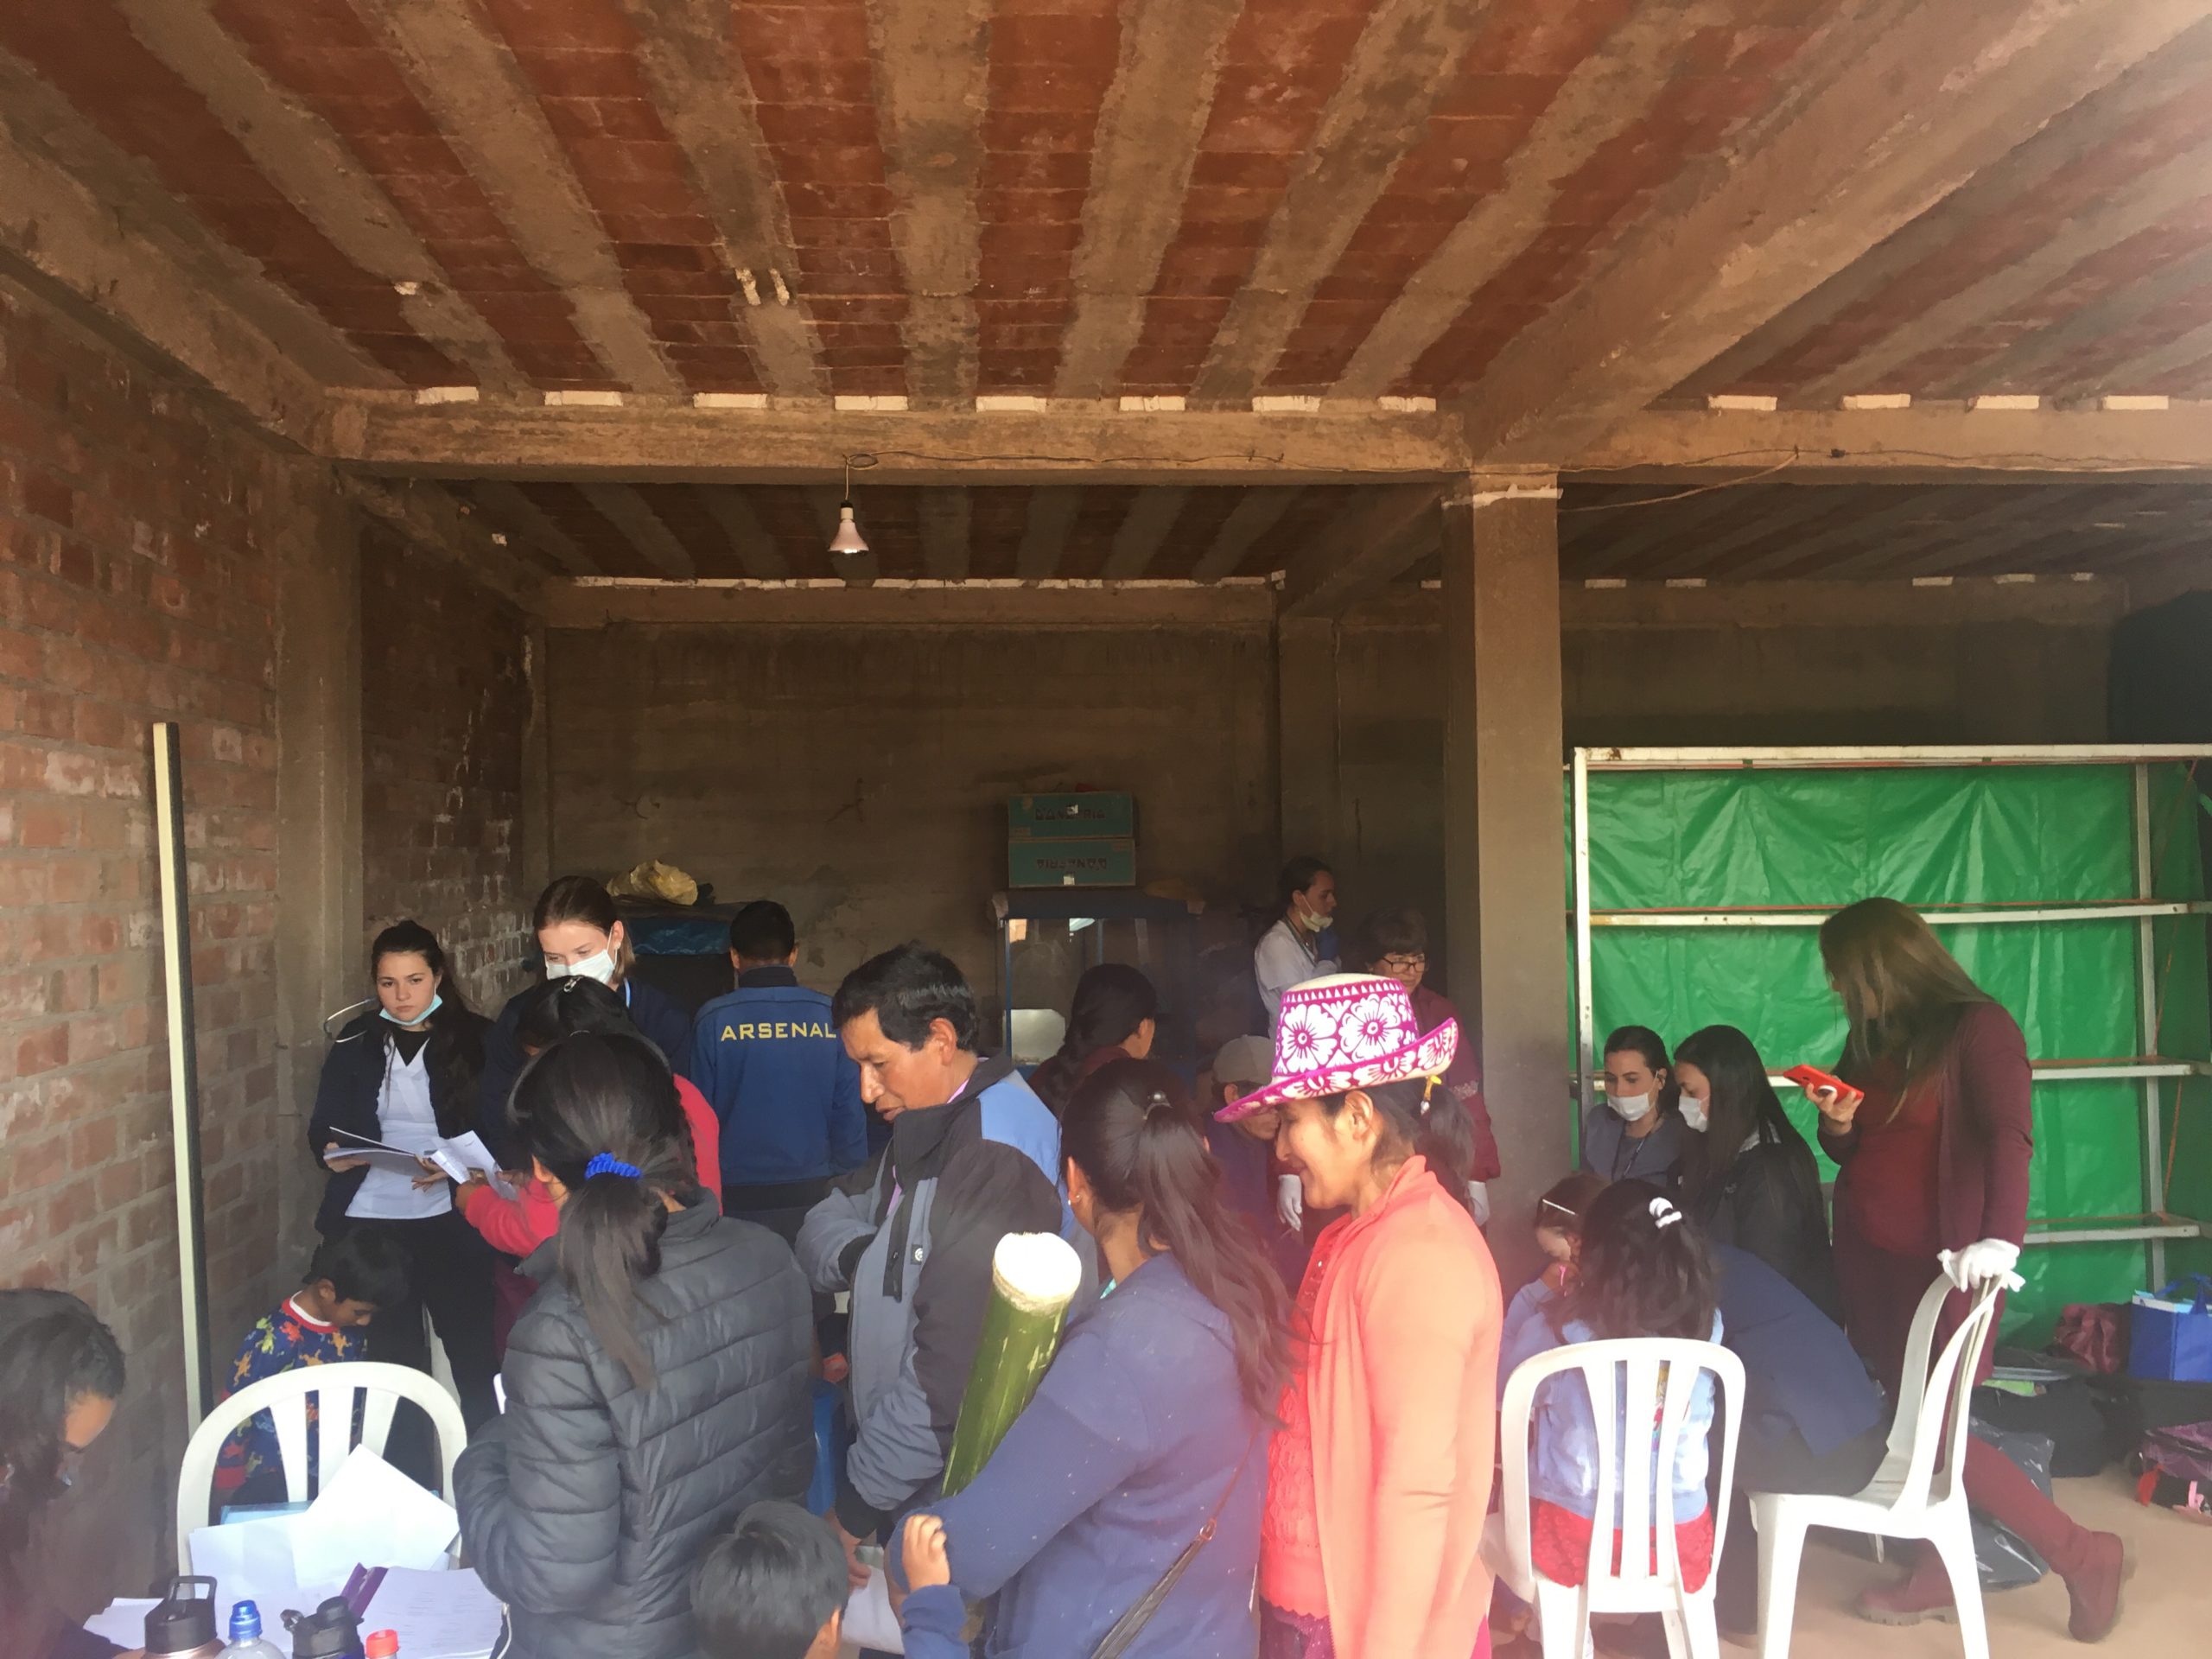 Clinic in Peru